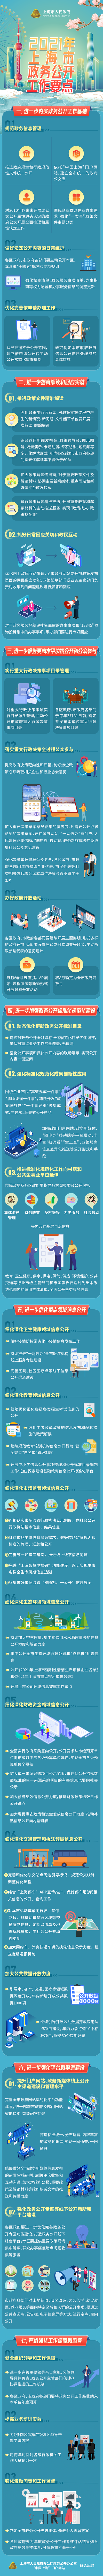 2021年上海市政务公开工作要点一图速览.png